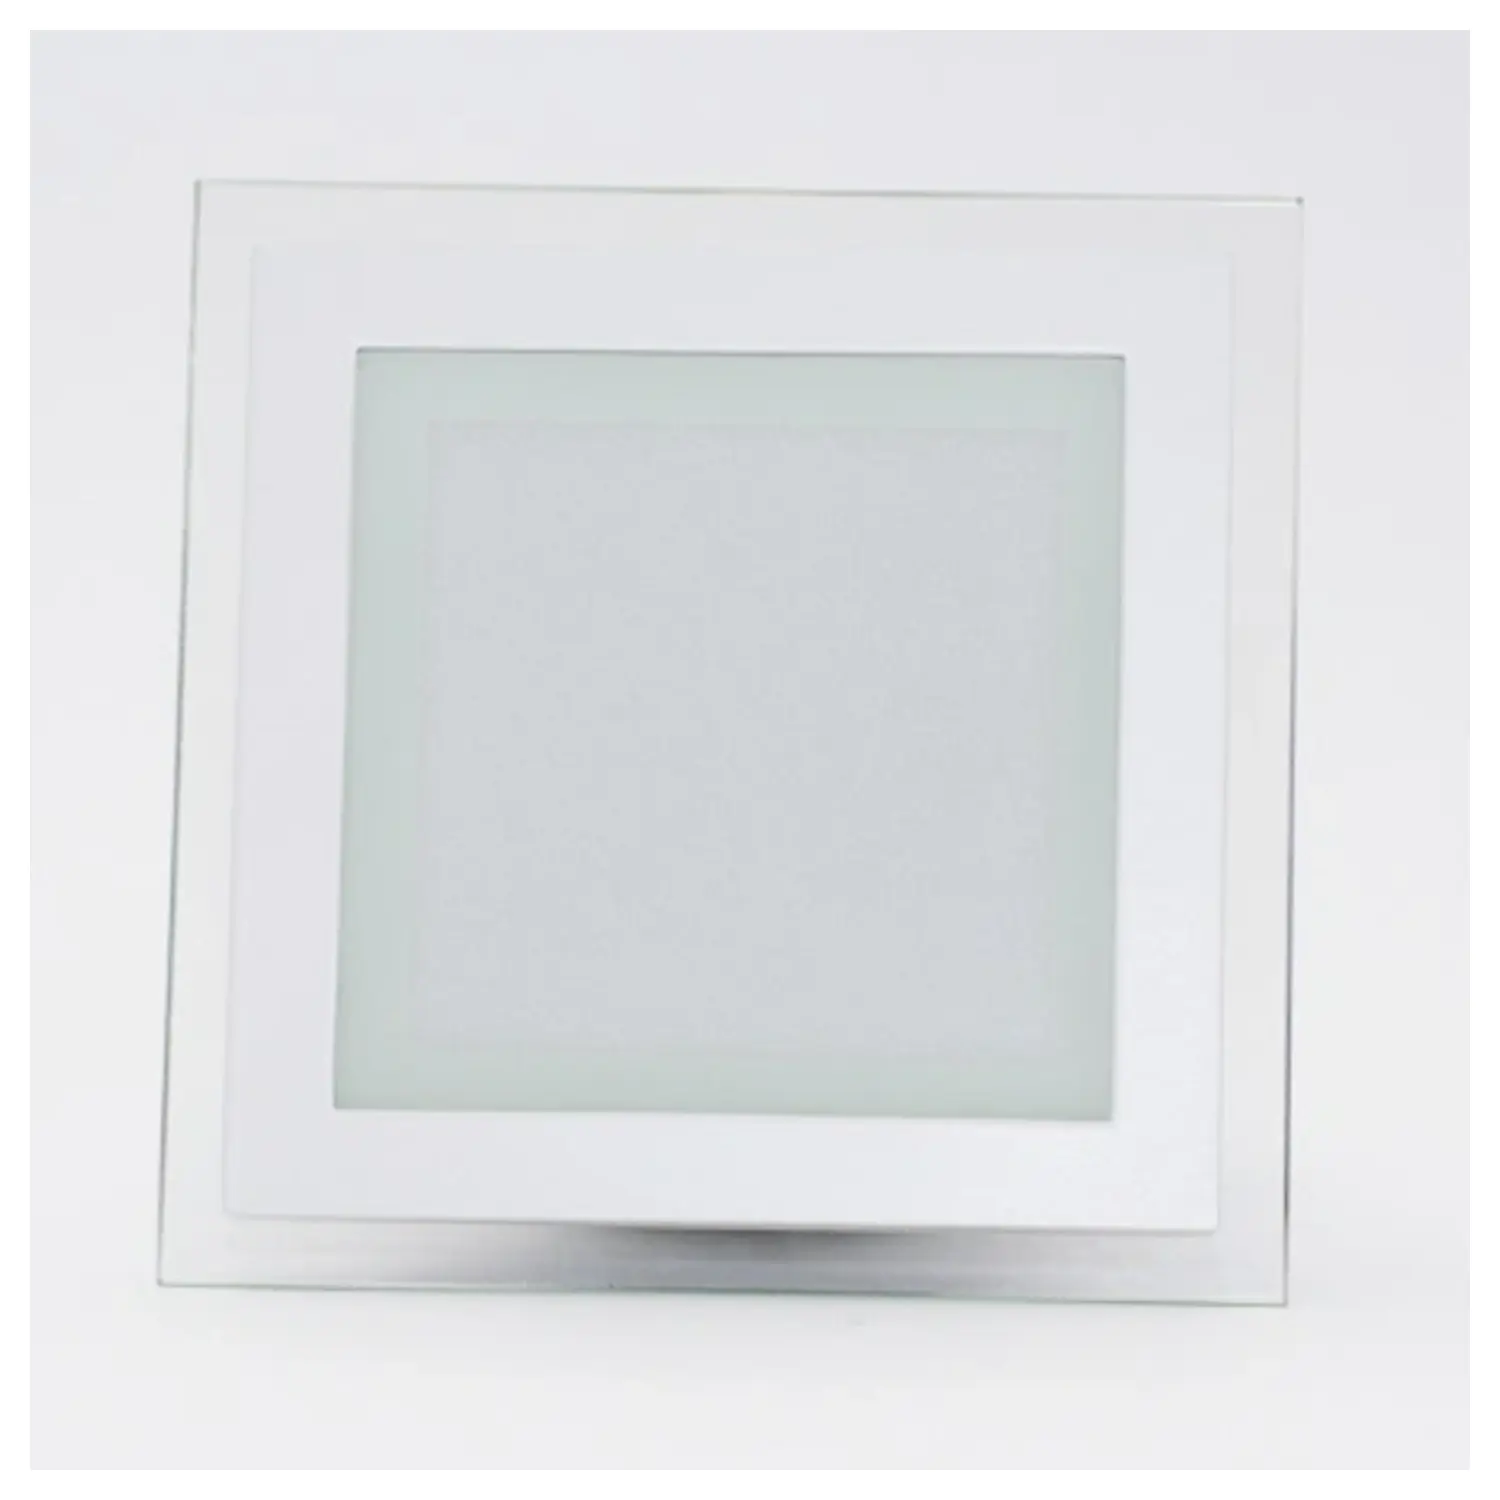 immagine del prodotto mini pannelo led cornice vetro incasso 6 watt bianco caldo quadrato